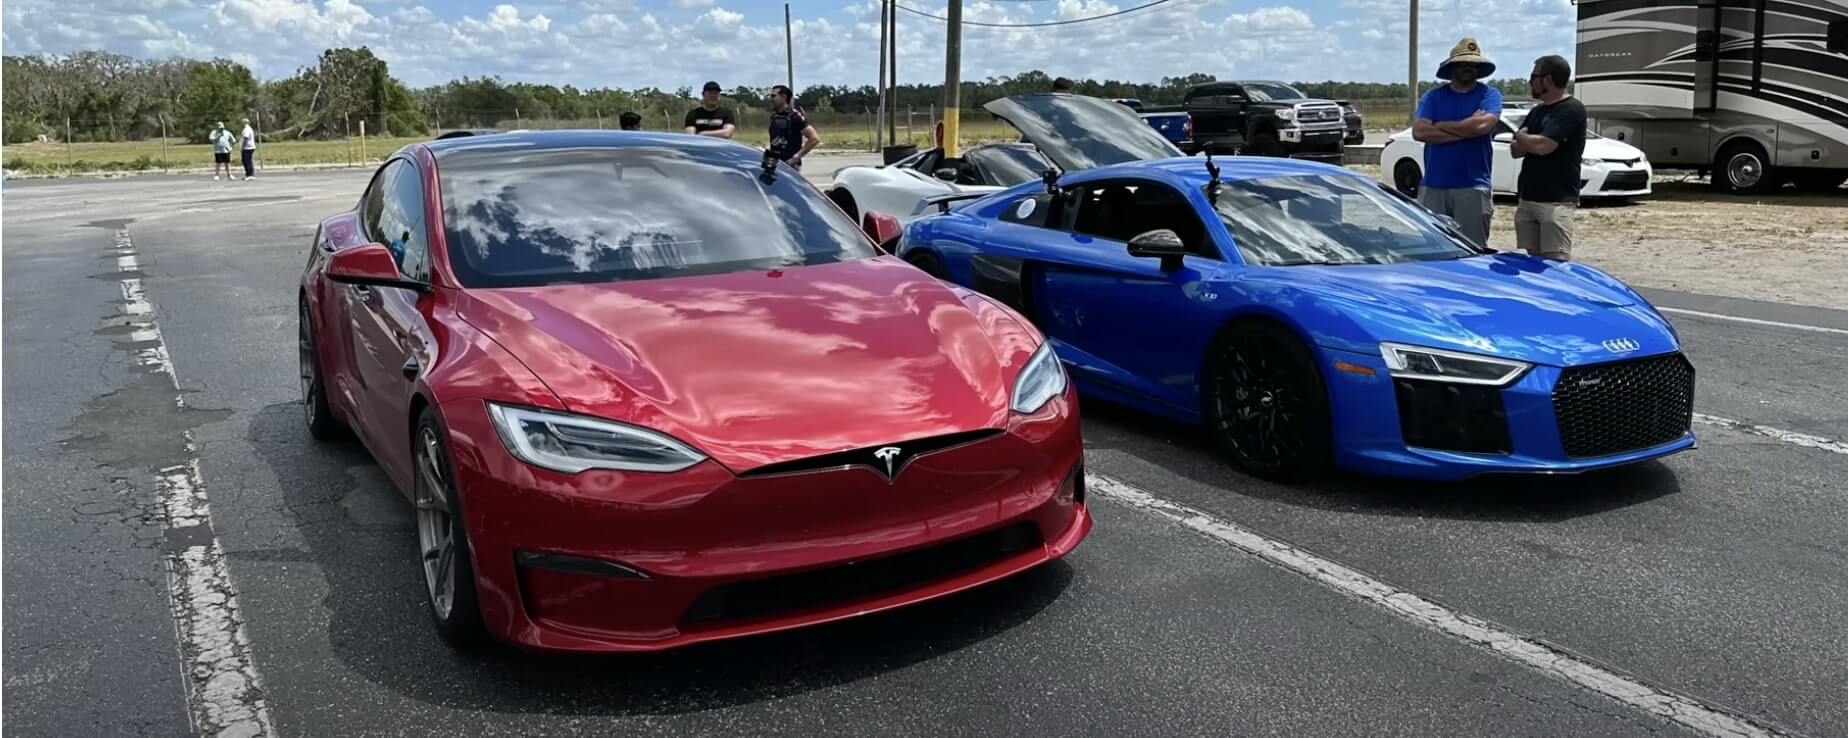 Tesla Model S Plaid steht vor seinem bisher härtesten Drag-Race-Gegner